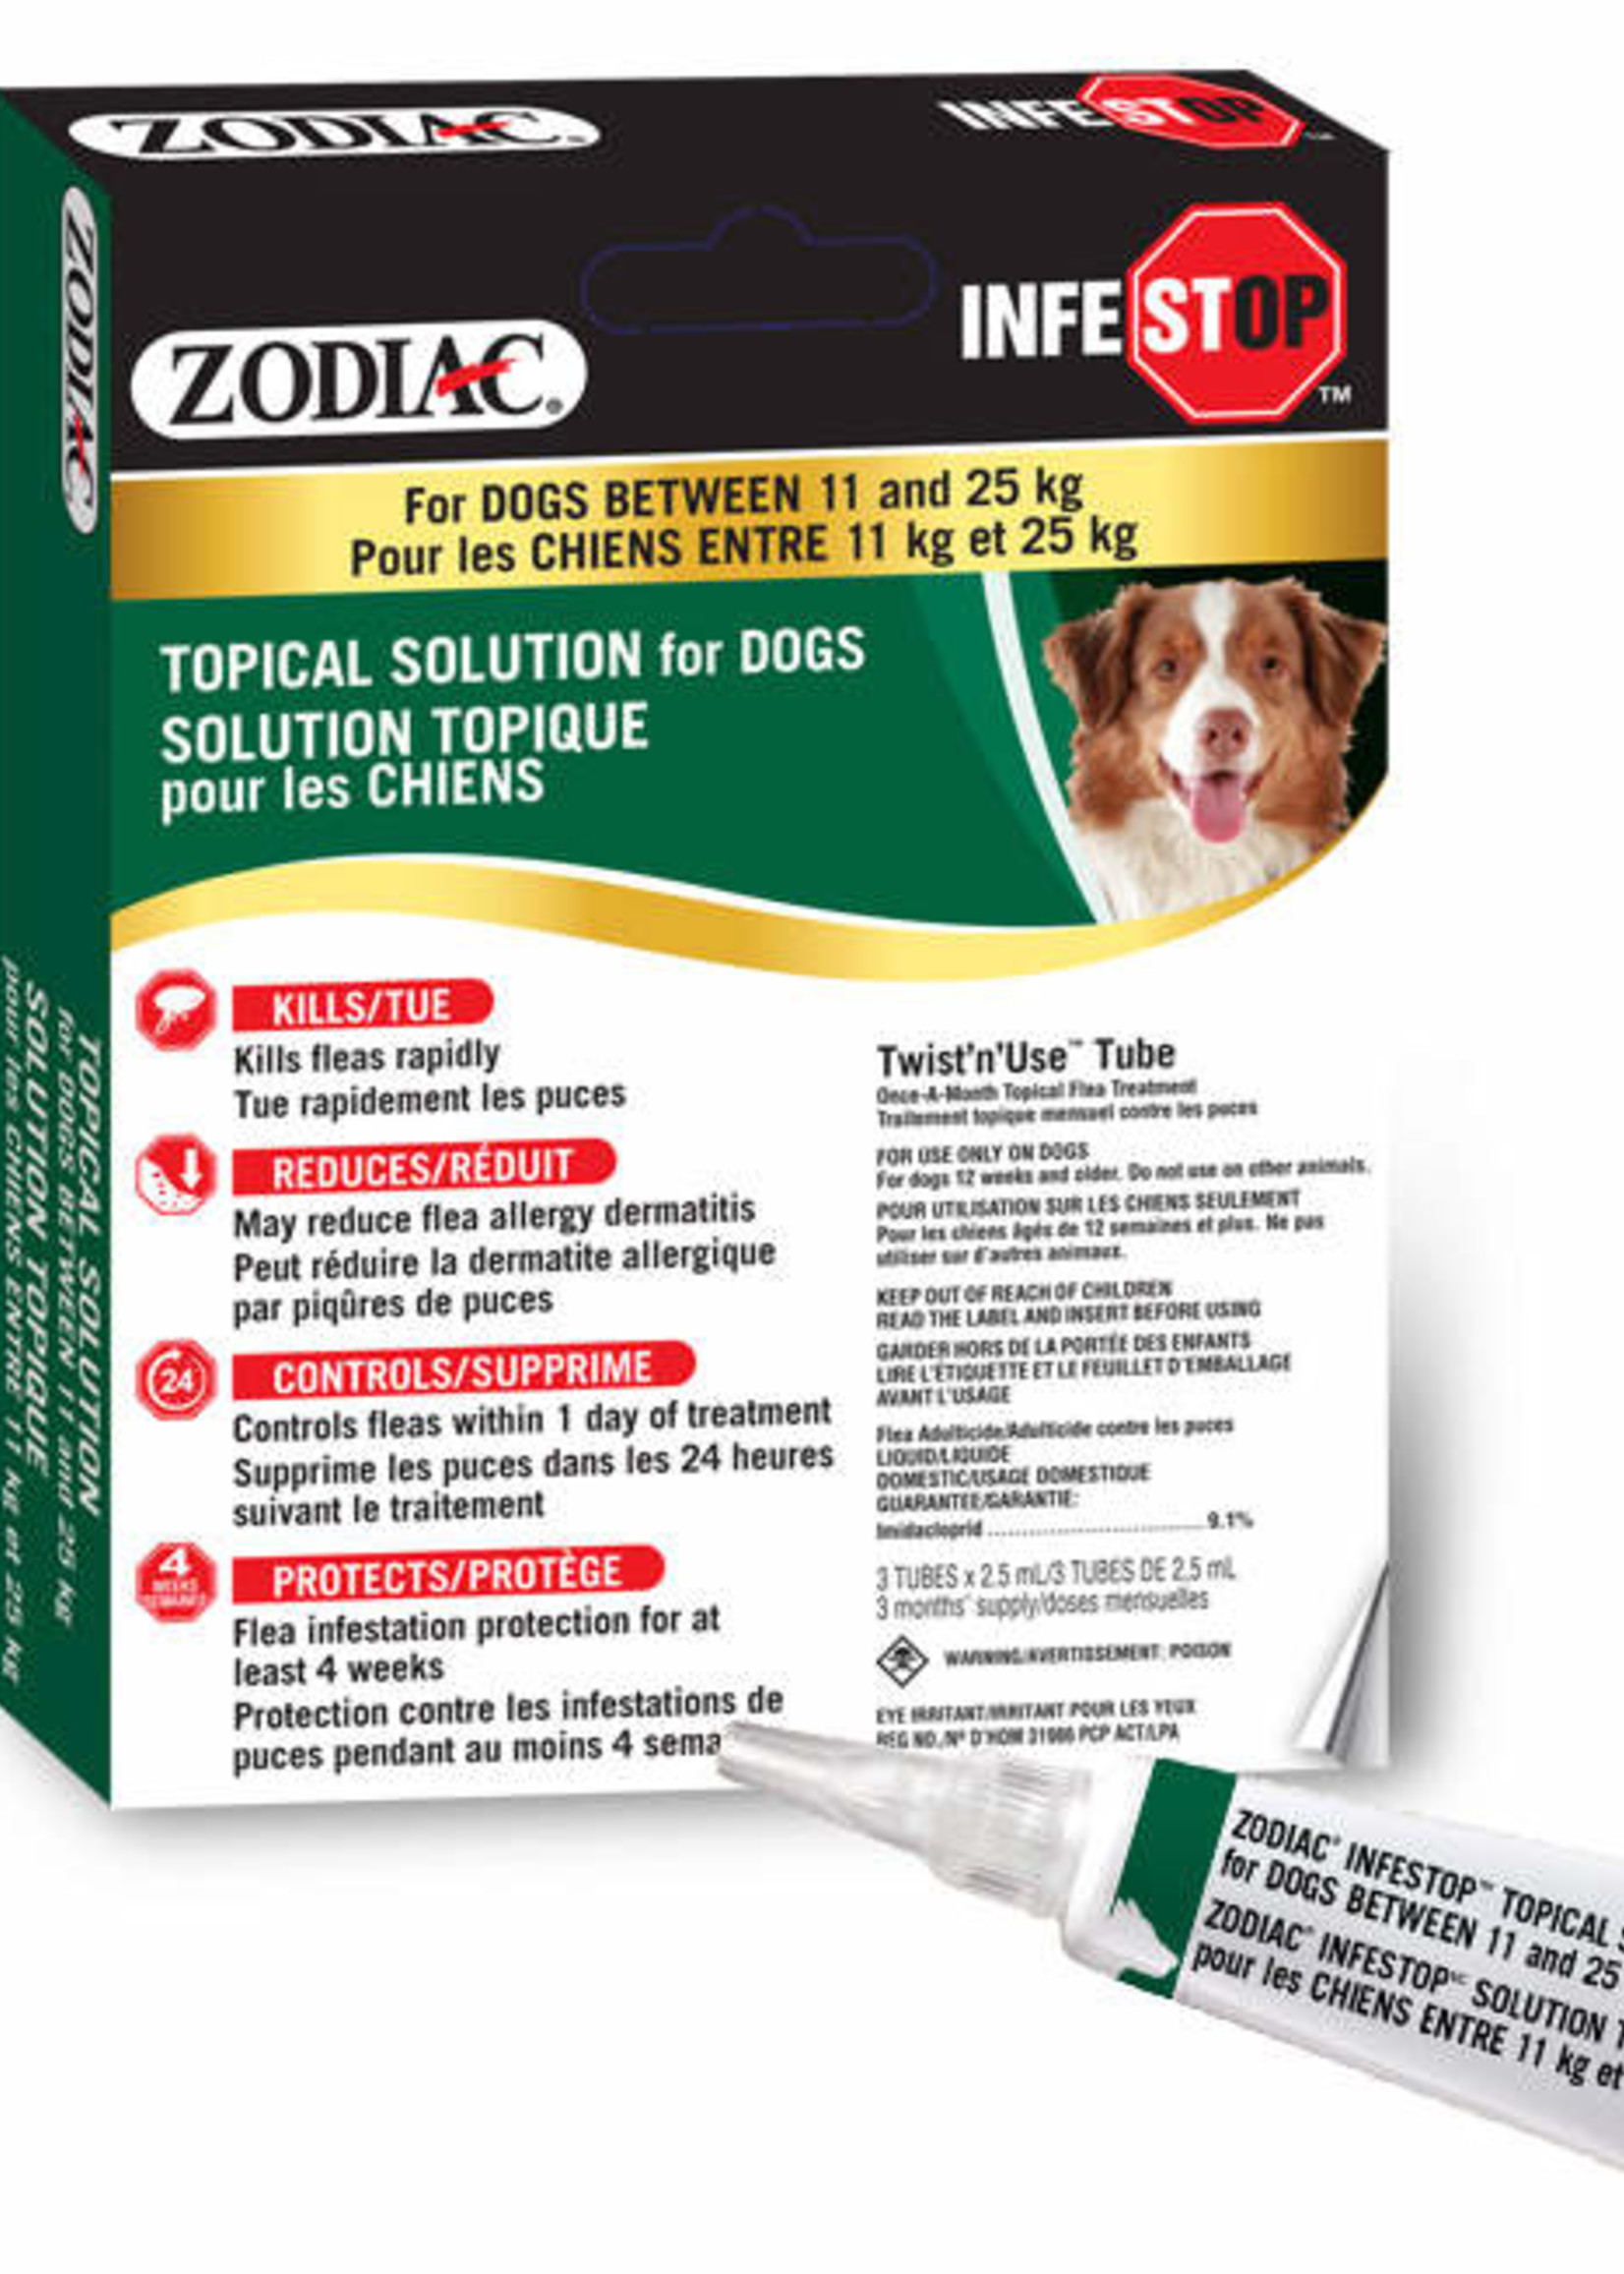 Zodiac® Zodiac® Infestop™ for Dogs between 11-25kG